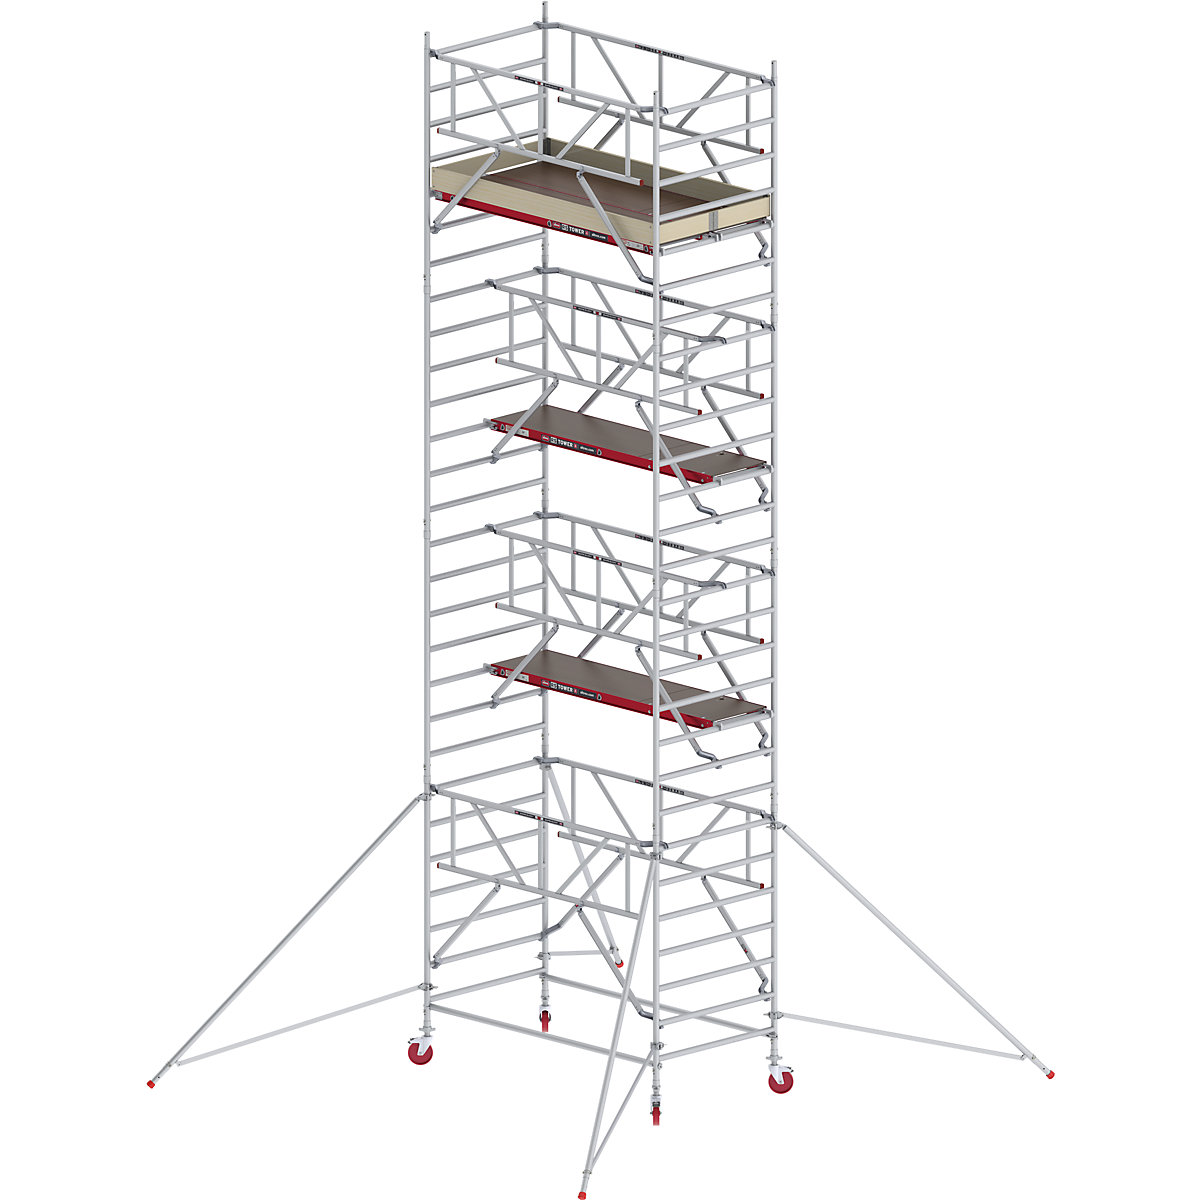 Andaime móvel largo RS TOWER 42 com Safe-Quick® – Altrex, plataforma de madeira, comprimento 2,45 m, altura de trabalho 9,20 m-2